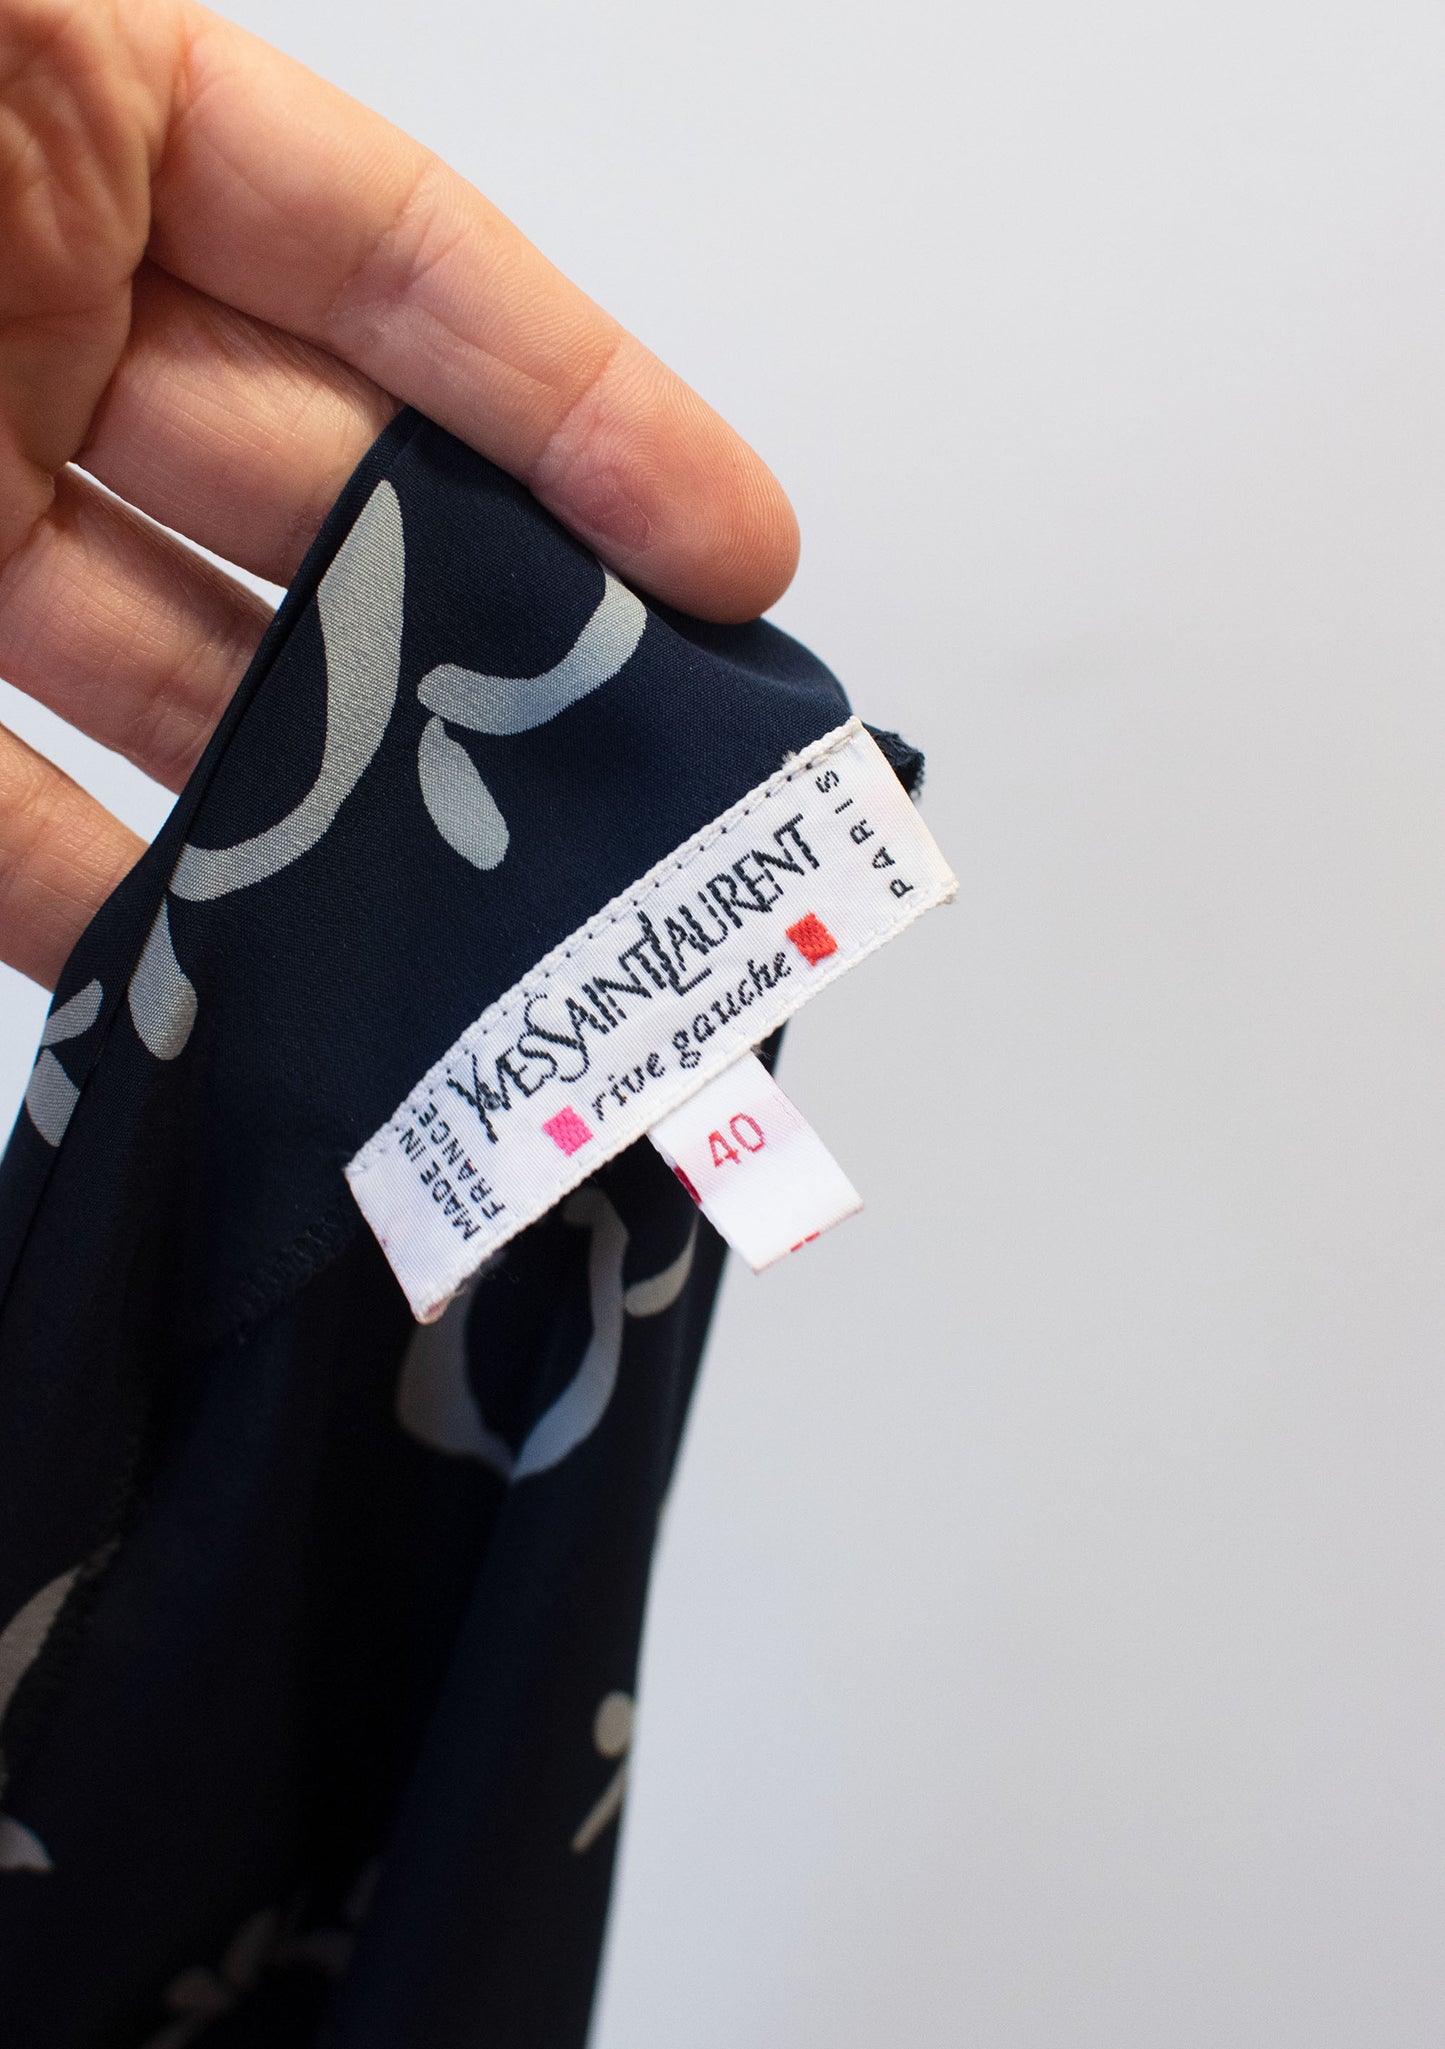 Yves Saint Laurent Silk Dress | A Virtual Affair